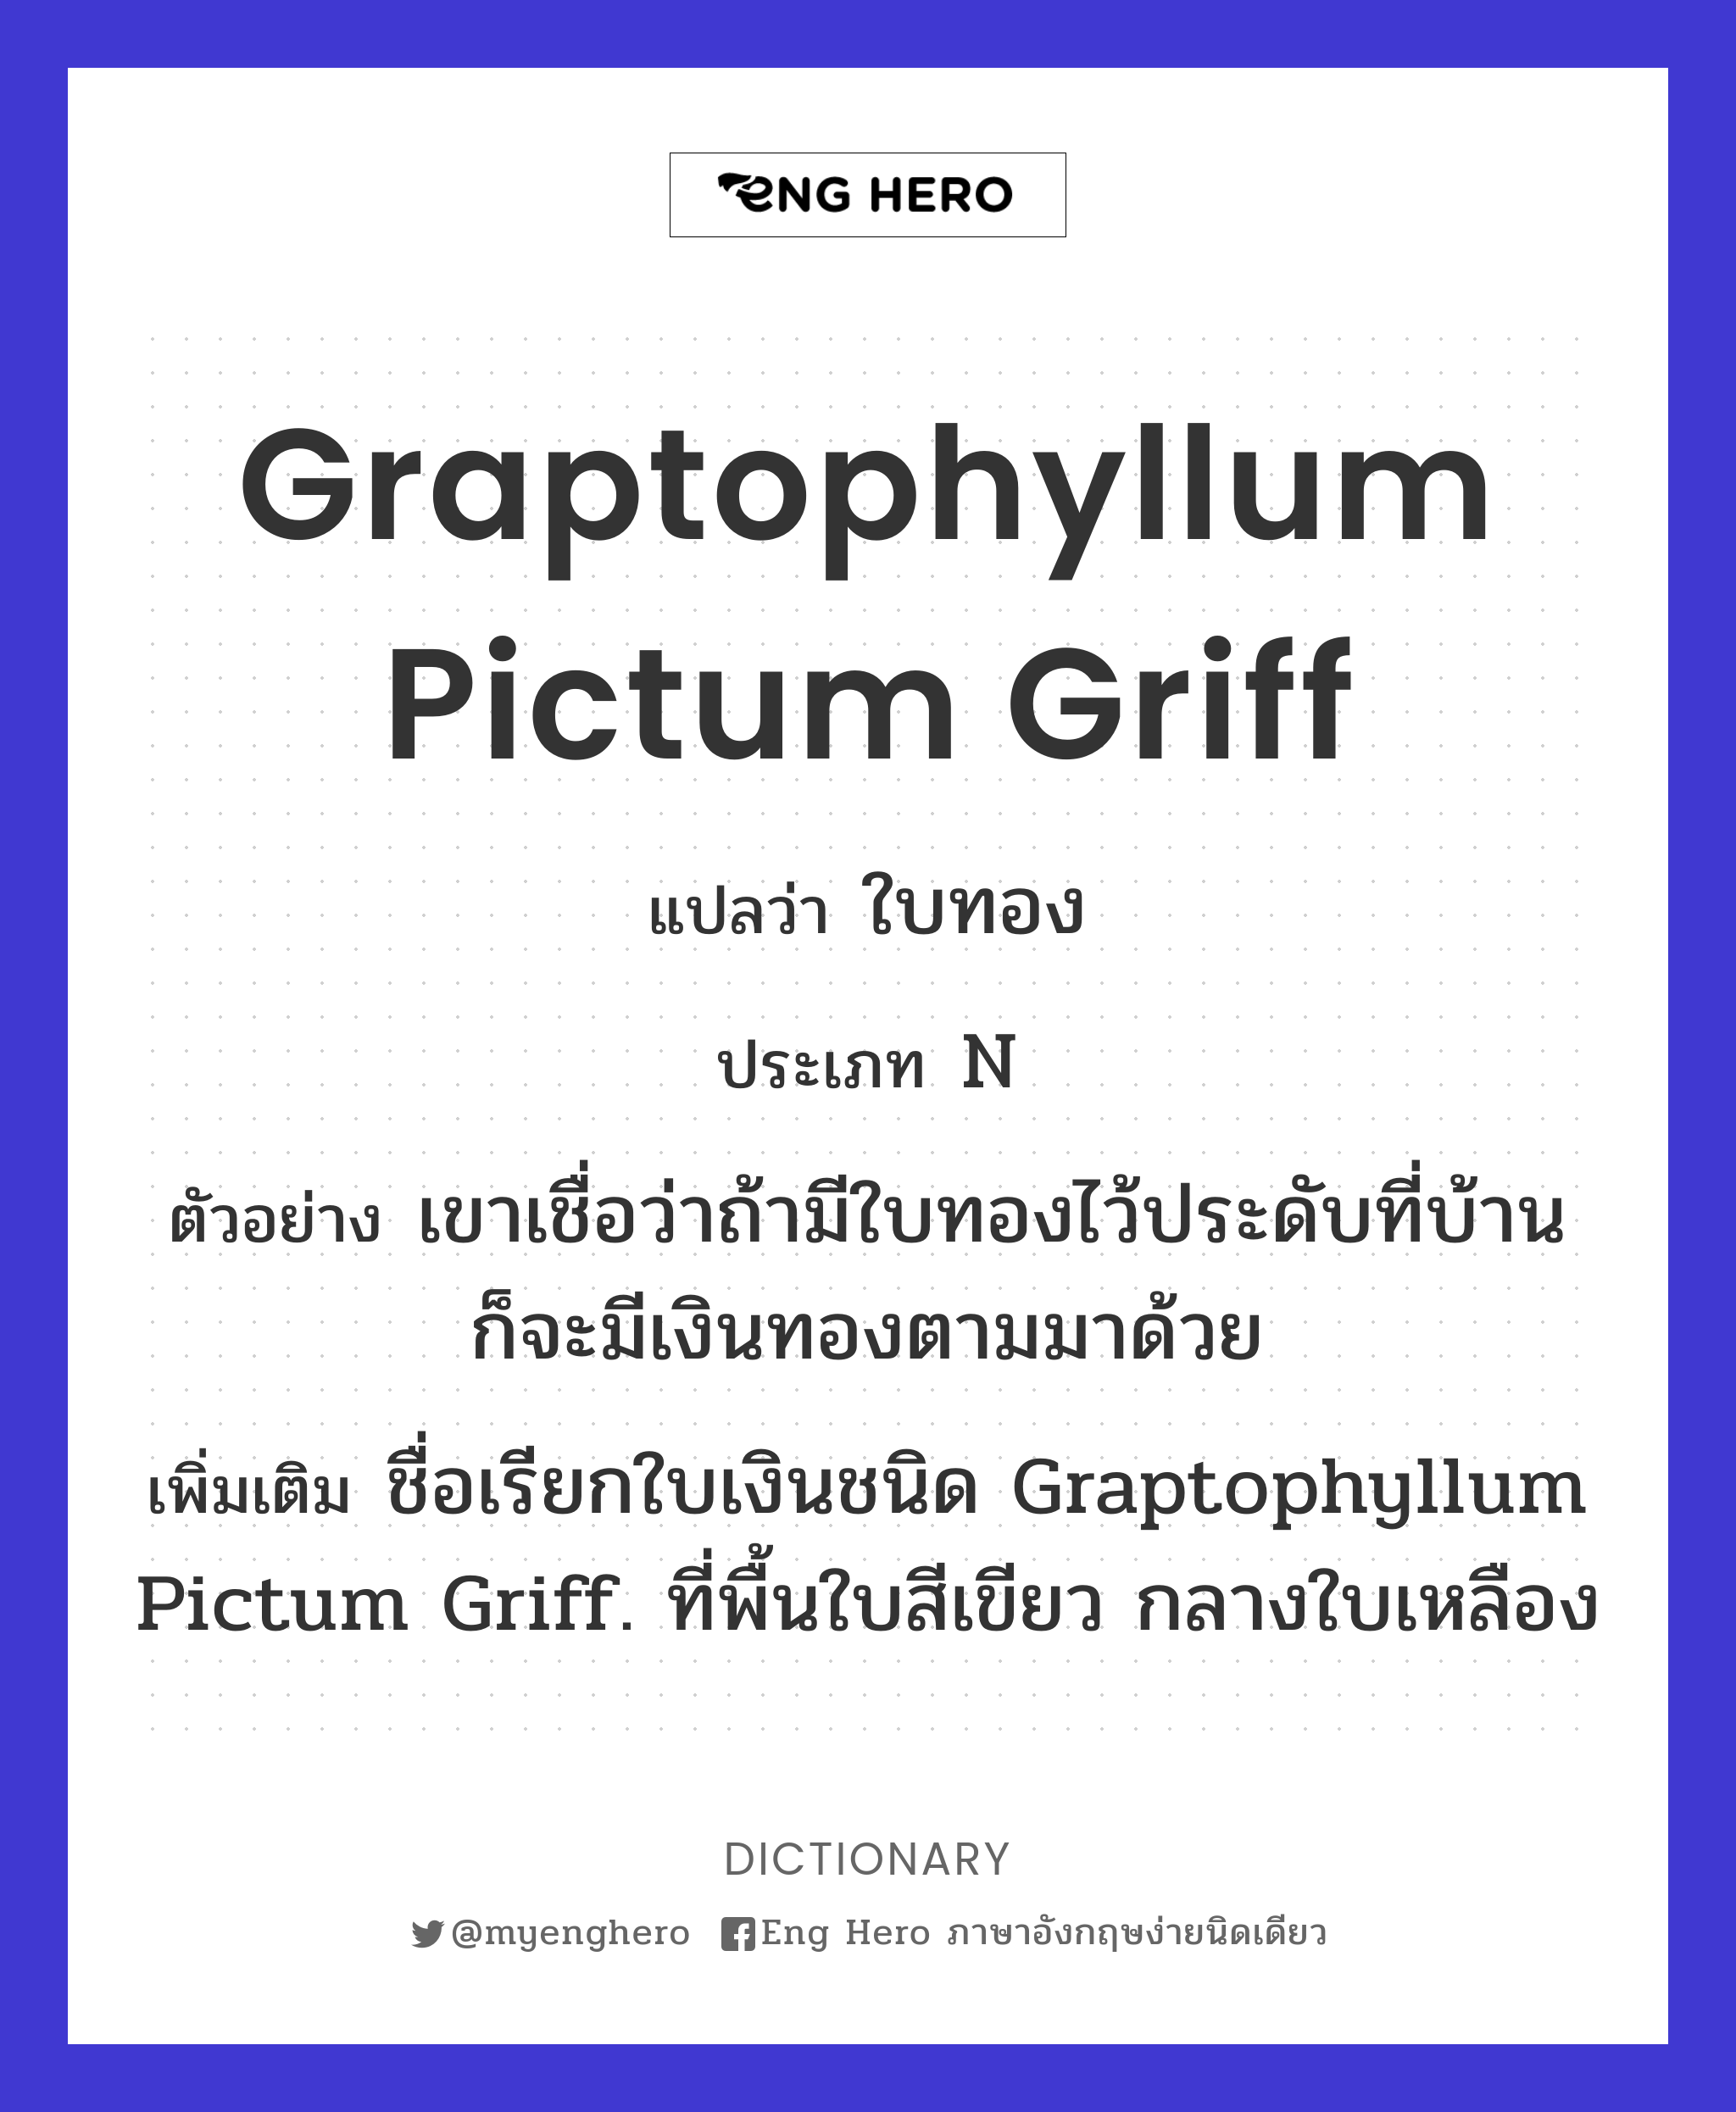 Graptophyllum pictum Griff